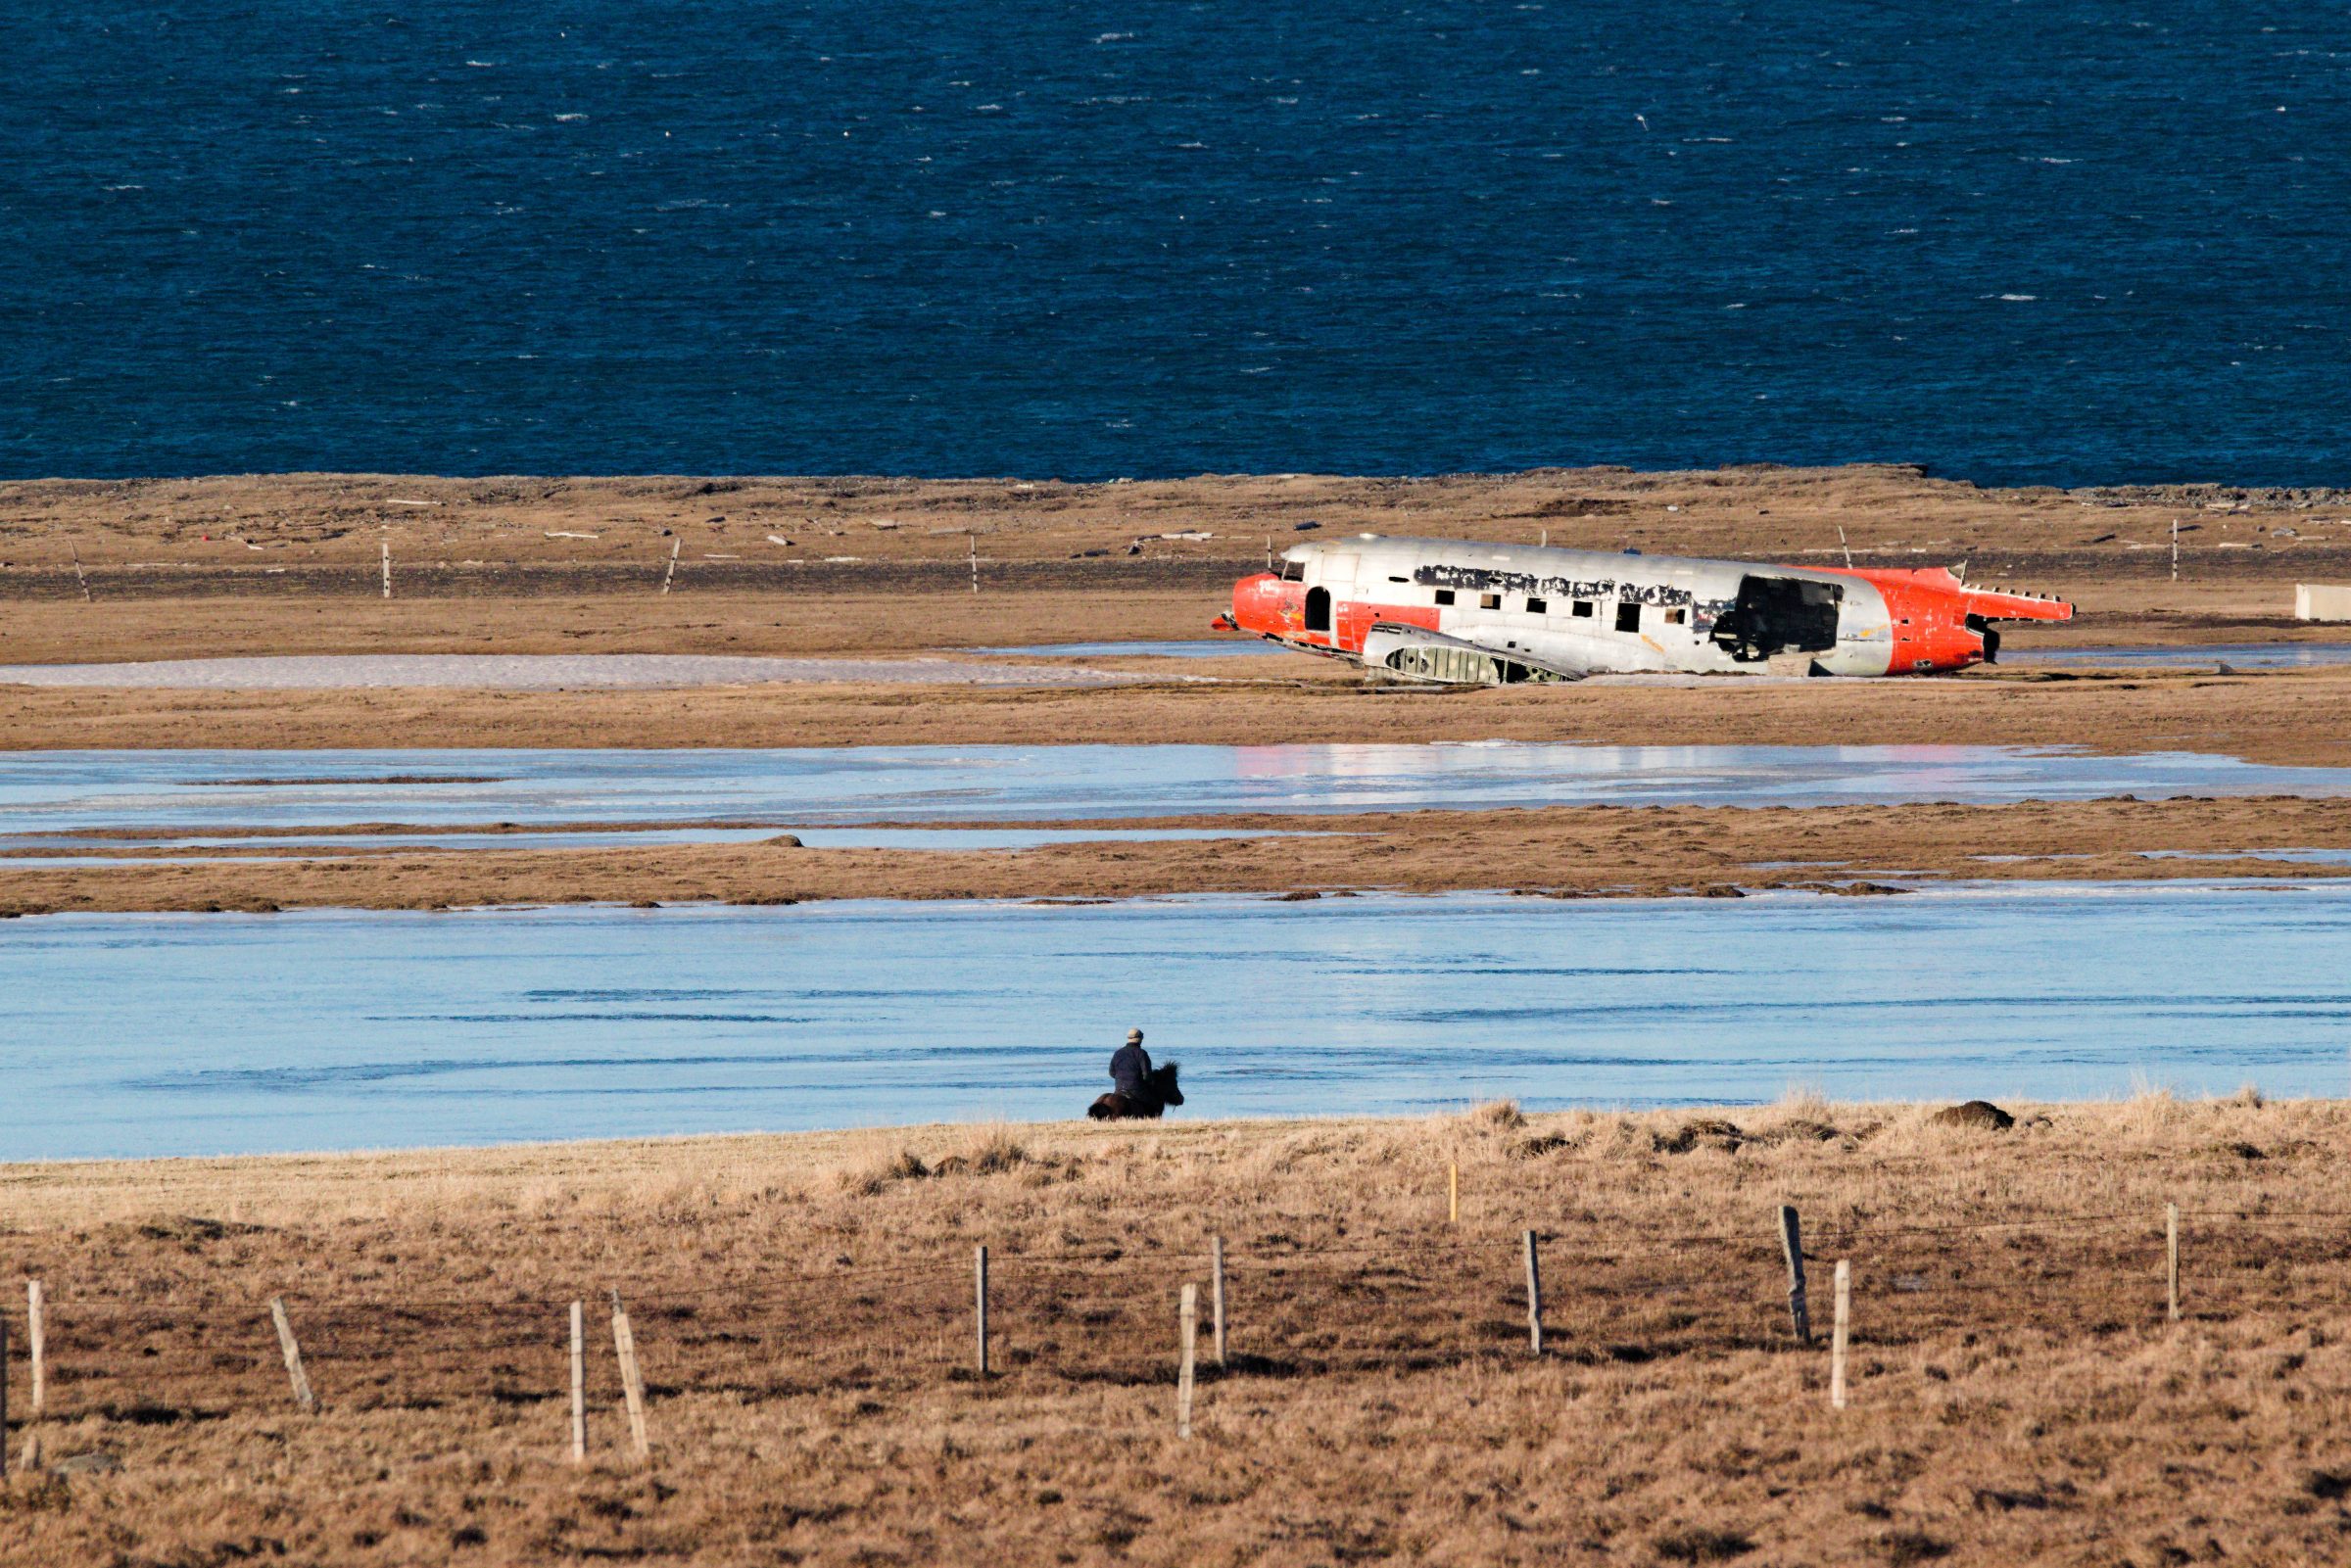 Flugzeugwrack in Island